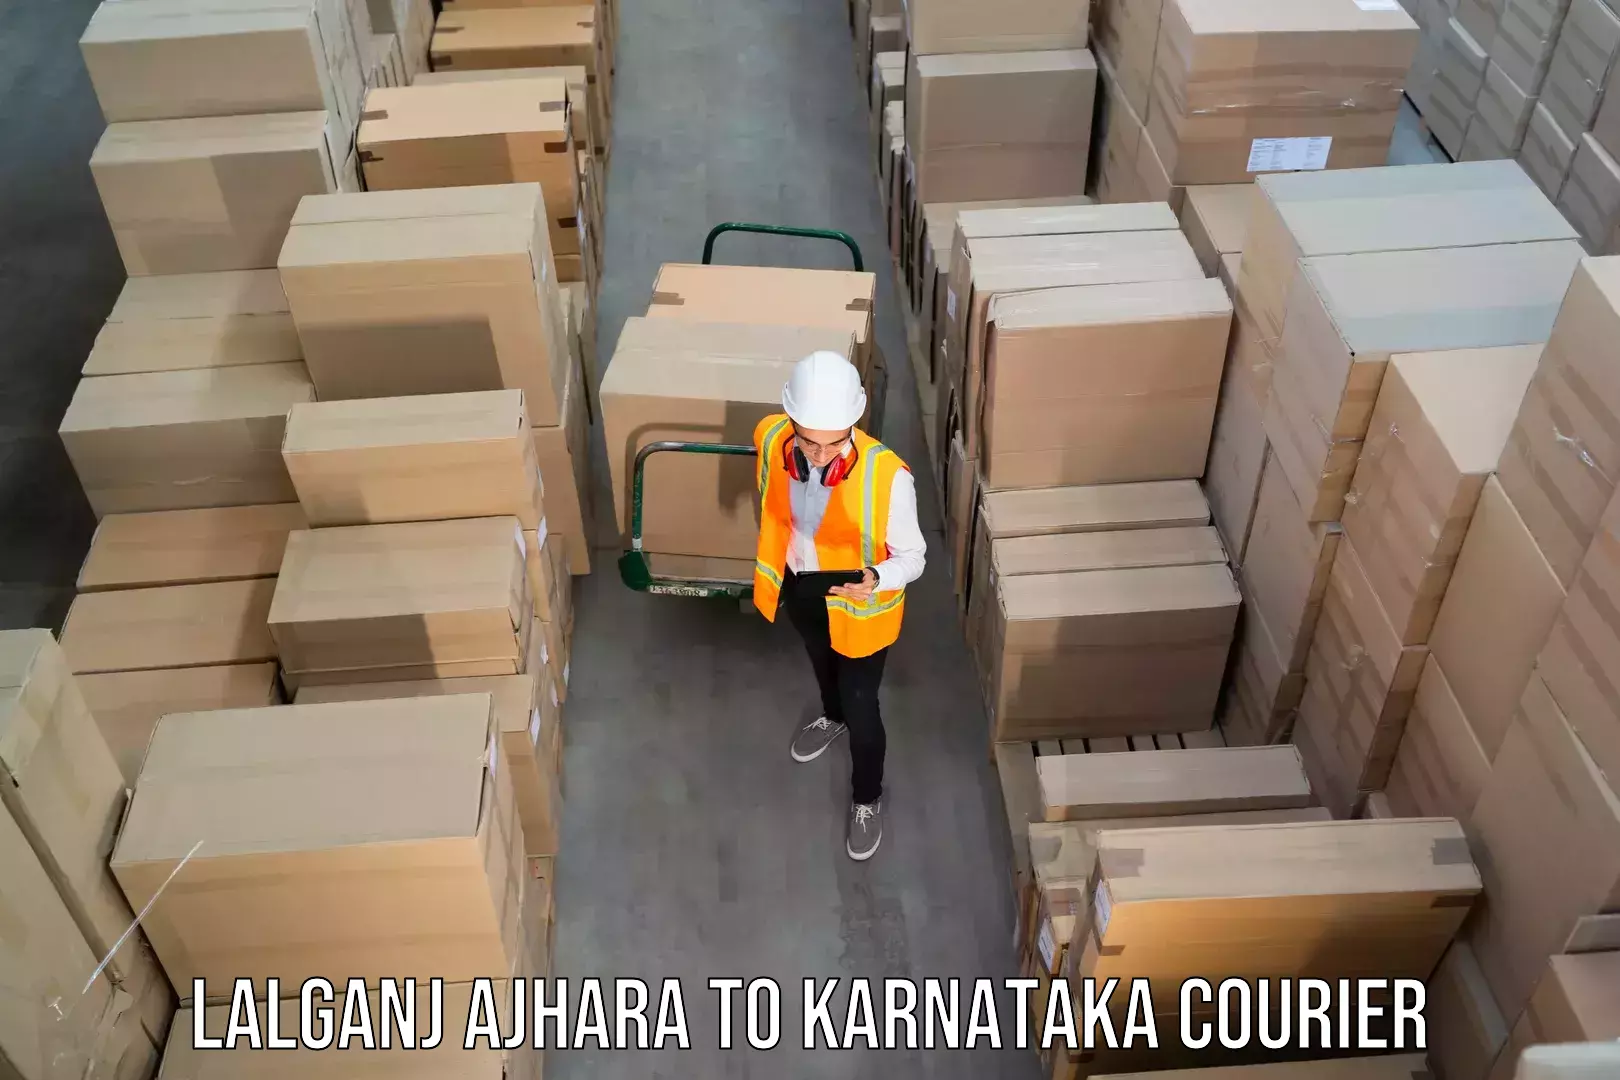 Express delivery capabilities Lalganj Ajhara to Karnataka